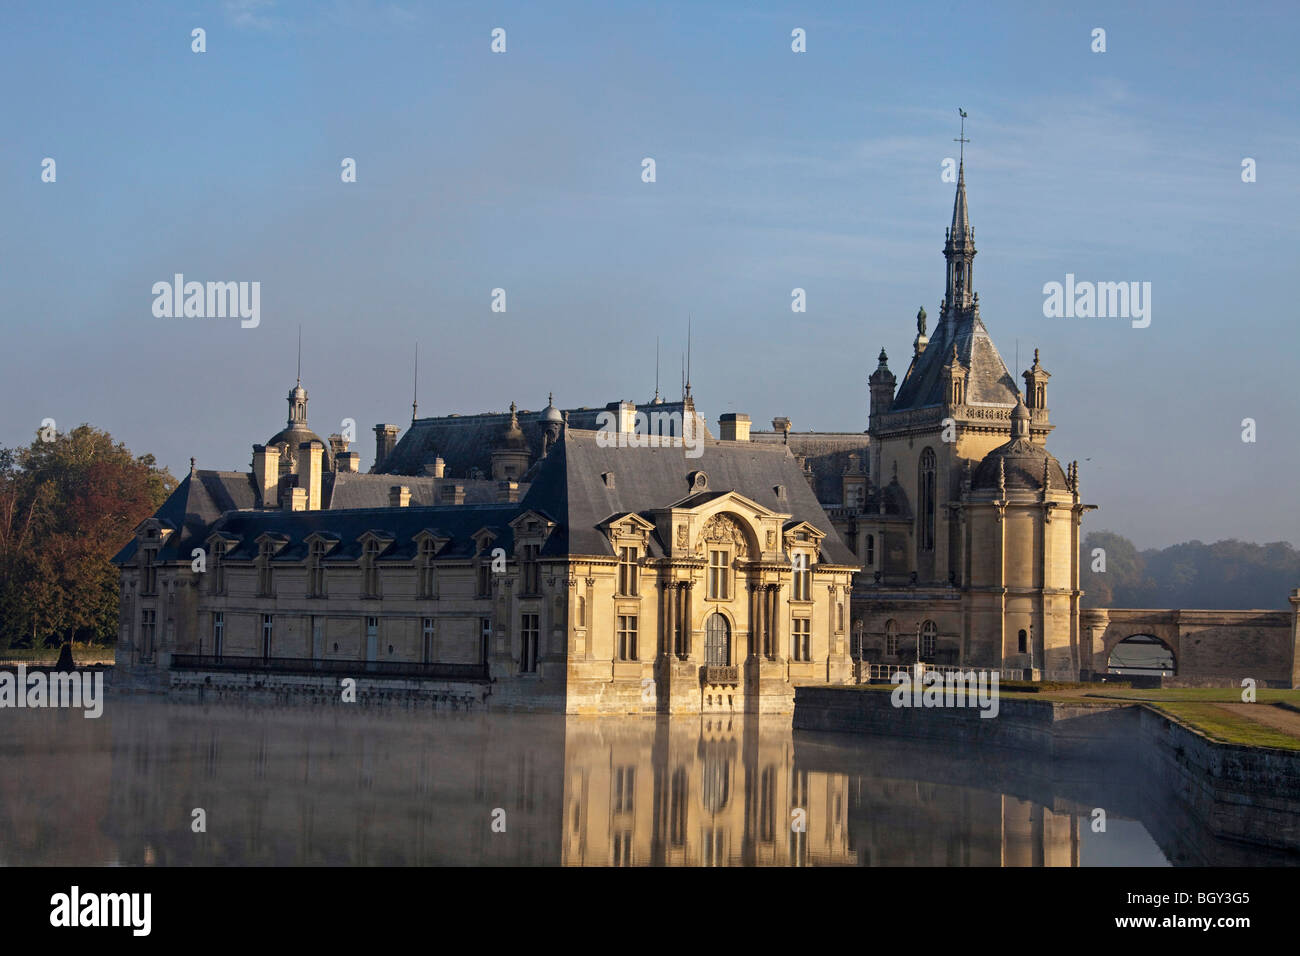 Château de Chantilly, Oise Frankreich. Wasser Reflexion atmosphärischen Sonnenlicht, blauen Morgenhimmel. Horizontale 100381 Chantilly Stockfoto